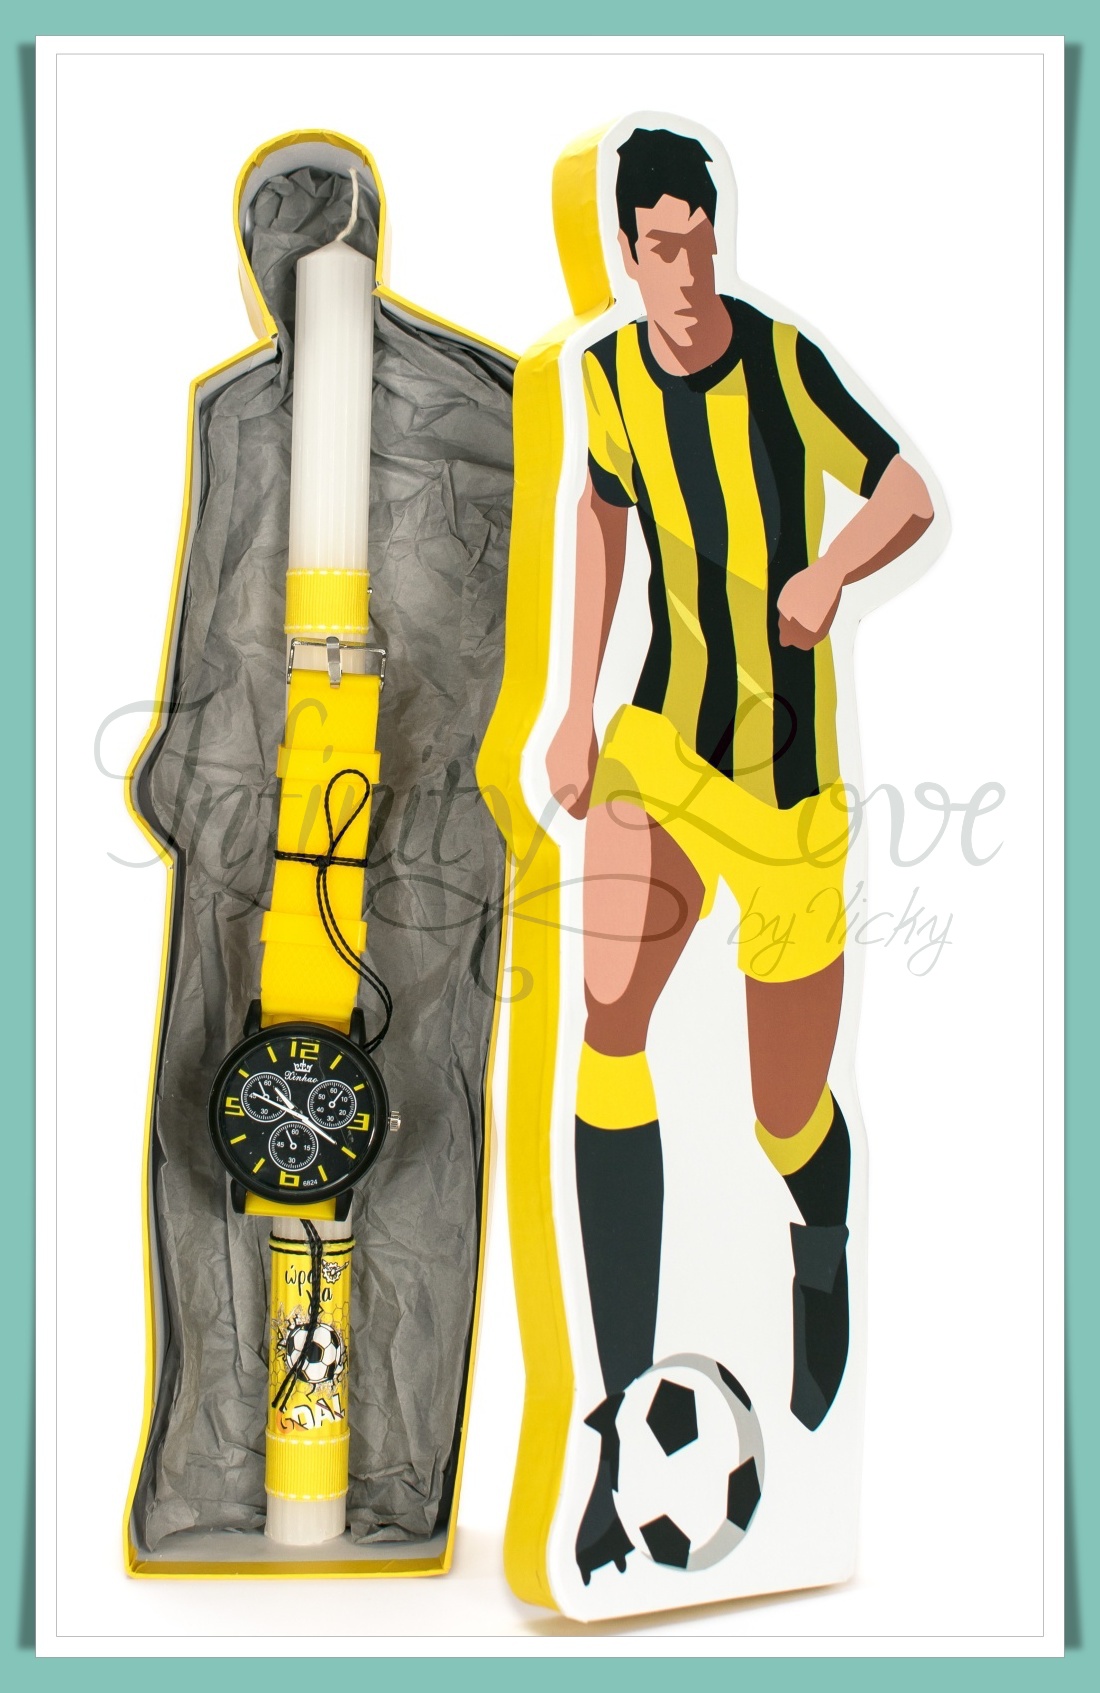 (120-3) Λαμπάδα με ποδοσφαιρικό ρολόι κίτρινο